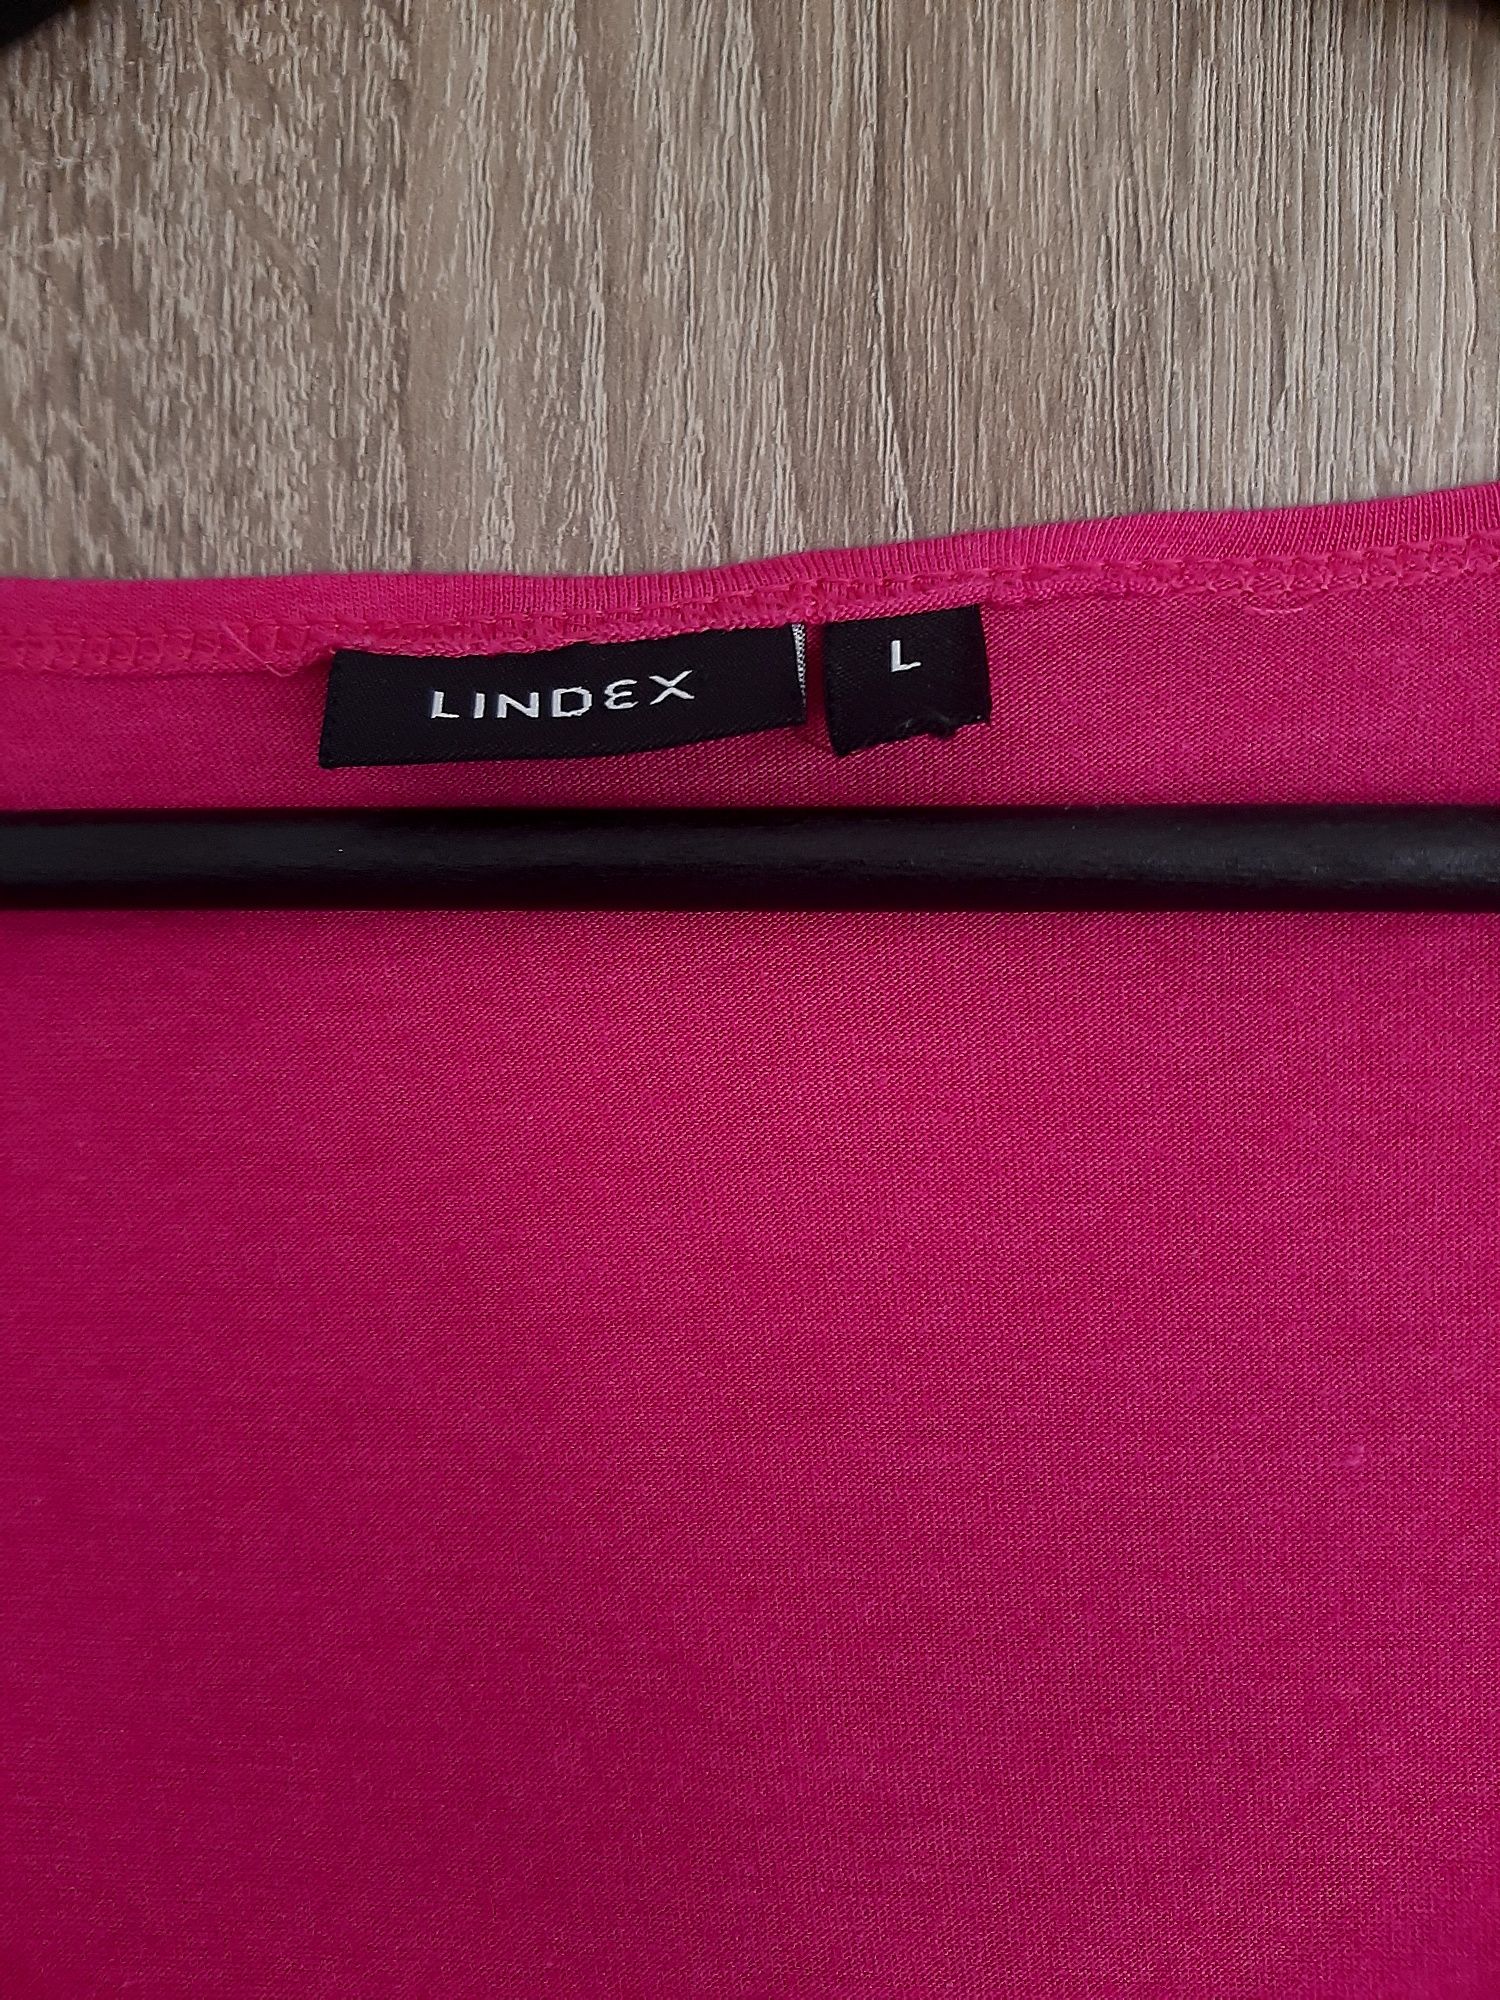 Mocno różowa malinowa dłuższa bluzka bluzeczka tunika Lindex L 40 XL 4